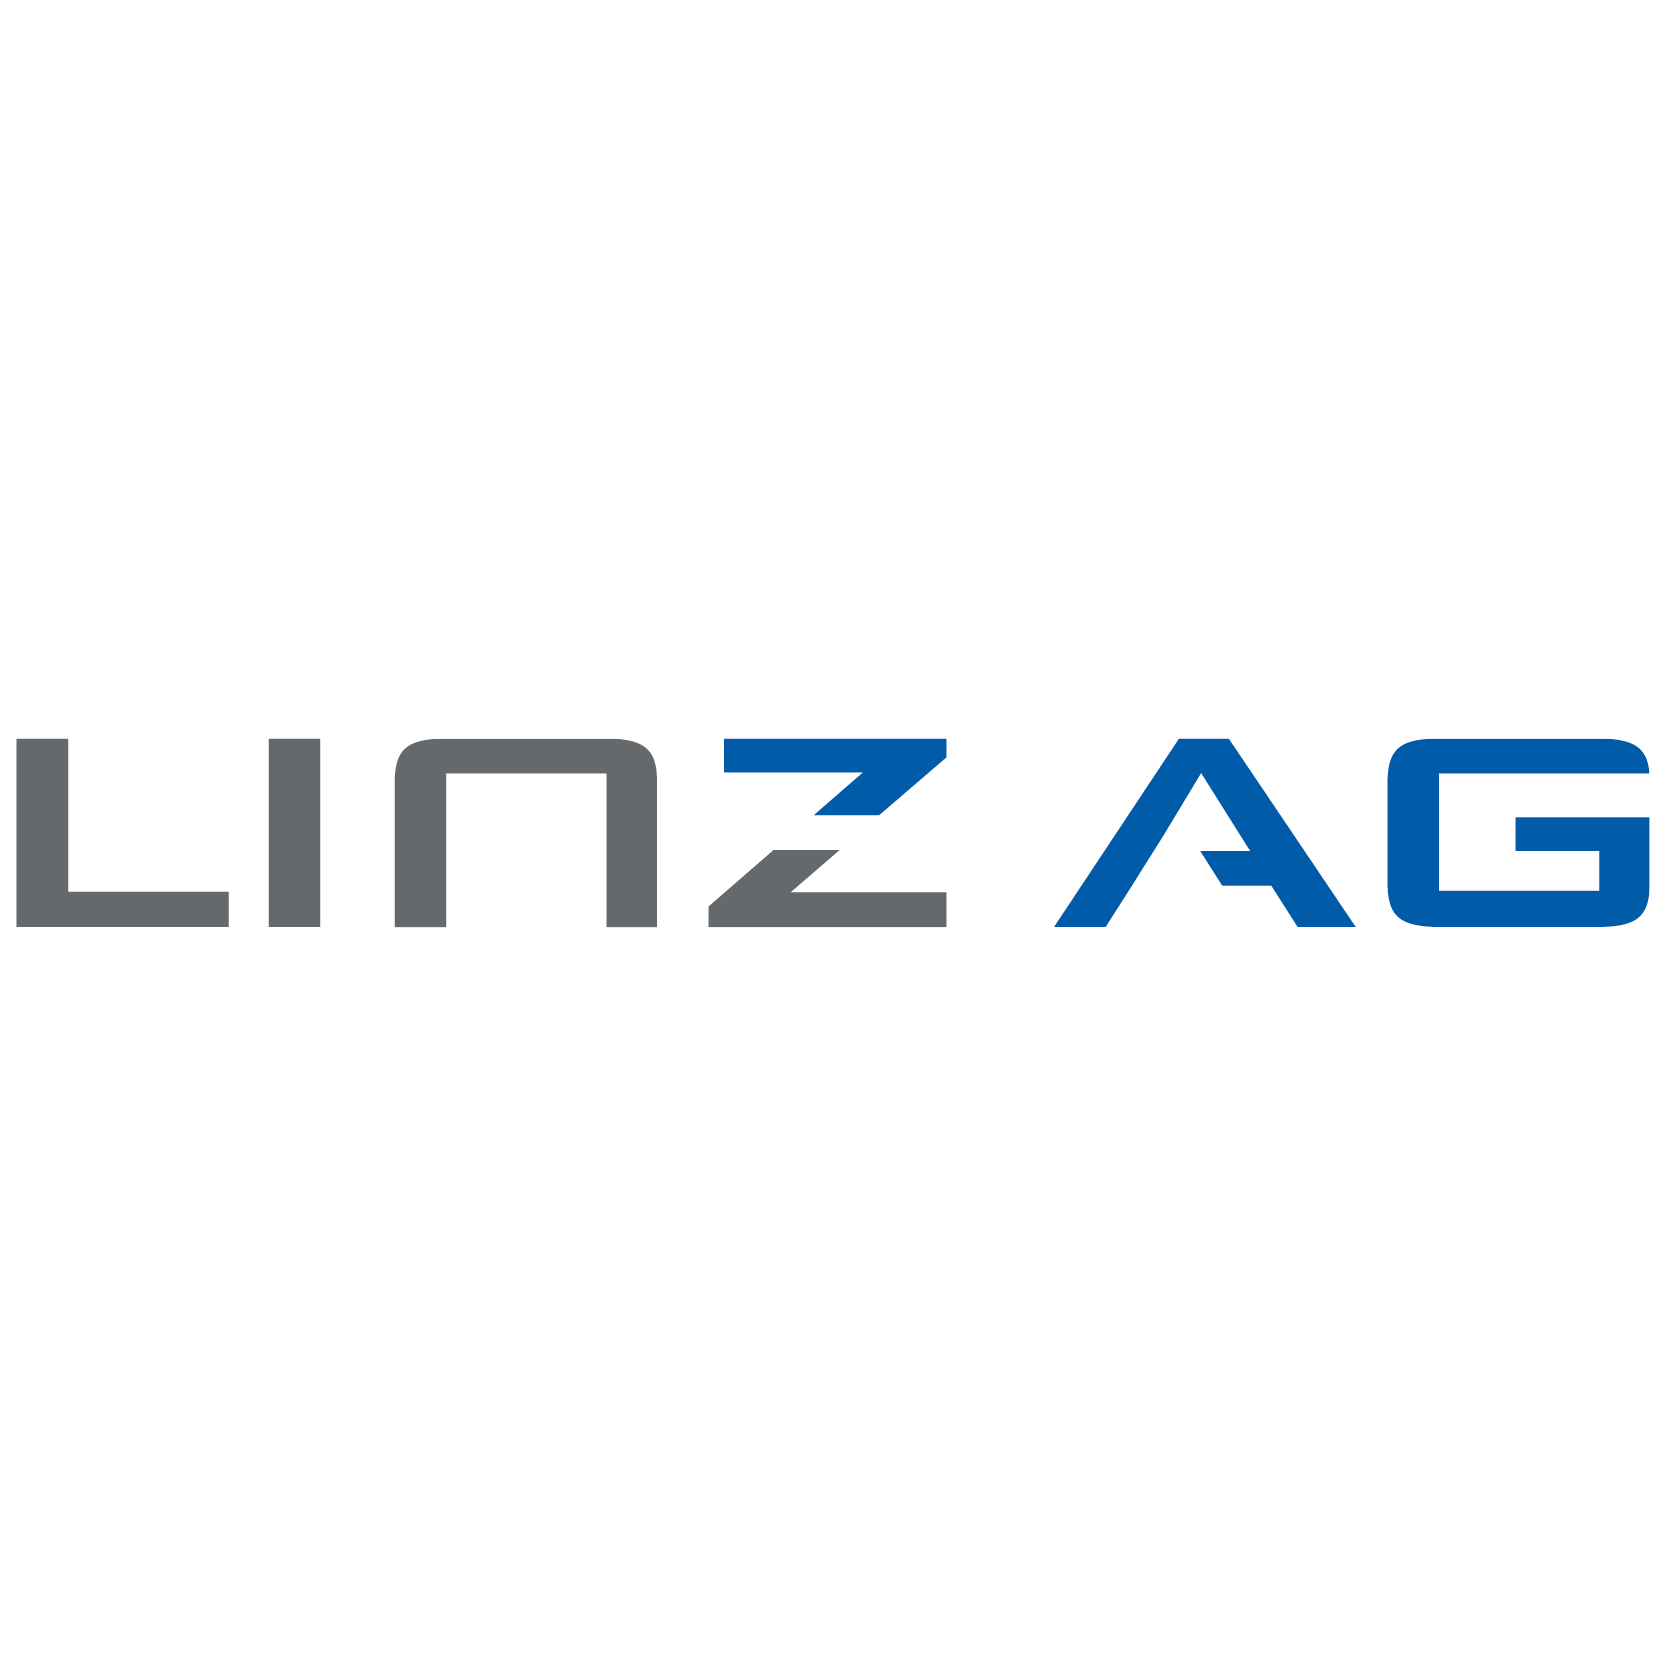 Logo Linz AG